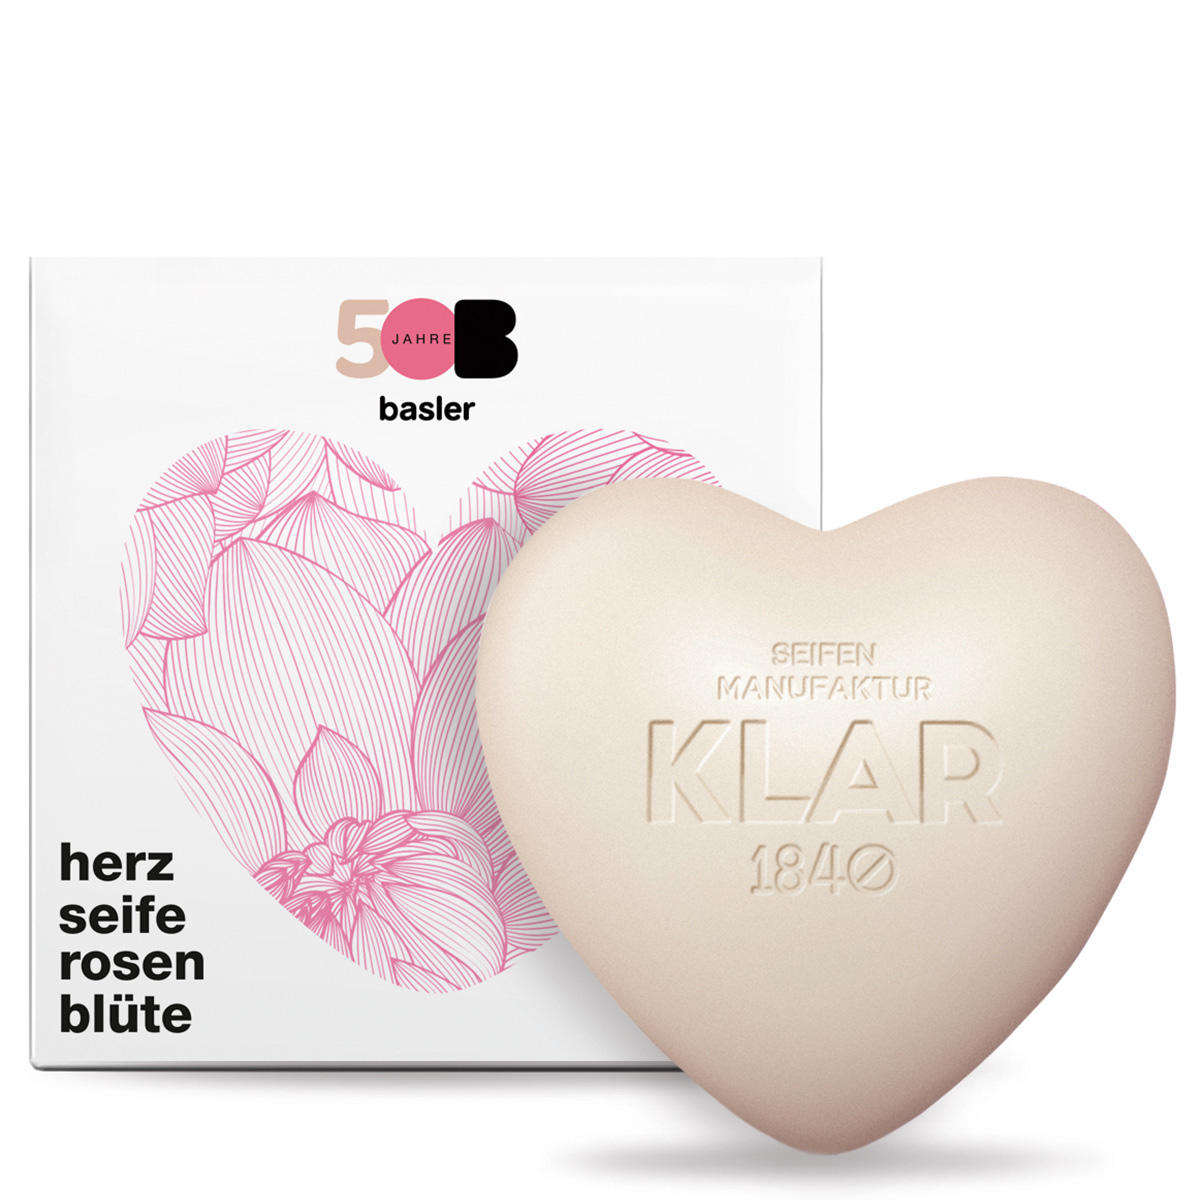 KLAR x Basler Heart soap rose blossom anniversary edition 65 g - 1